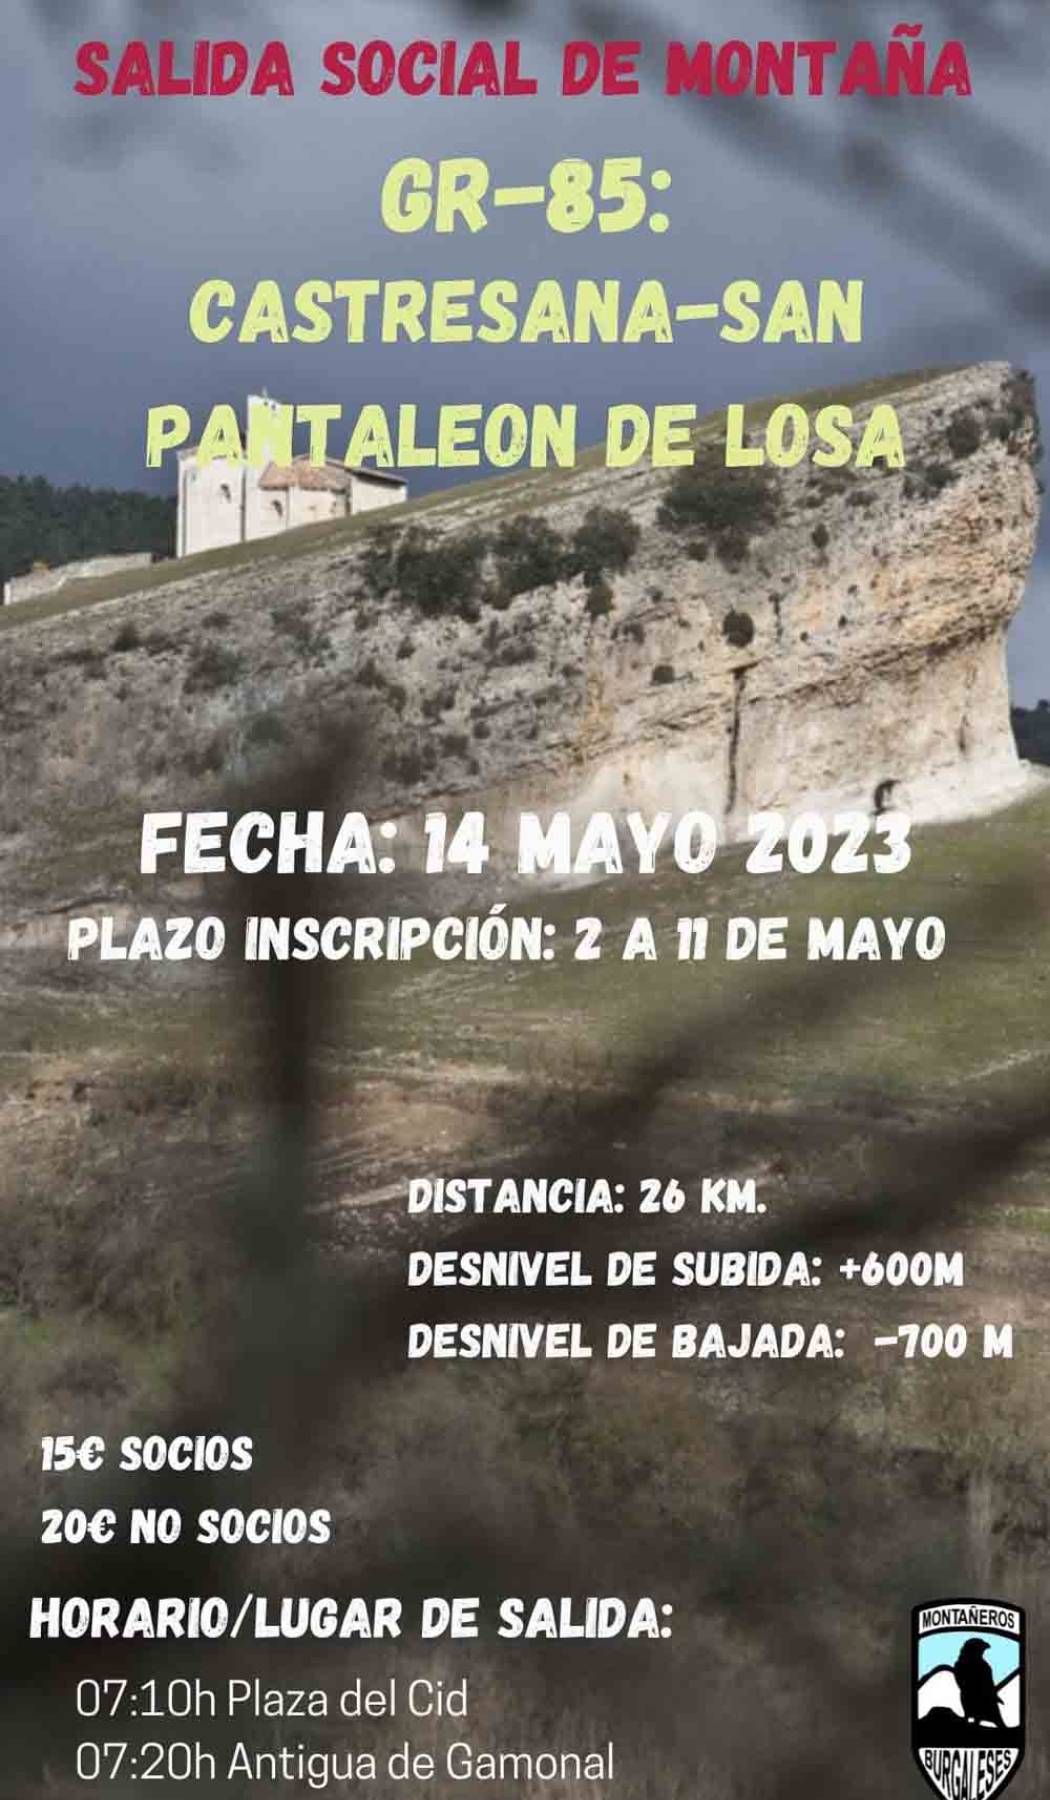 GR-85 Castresana de Losa-San Pantaleón de Losa